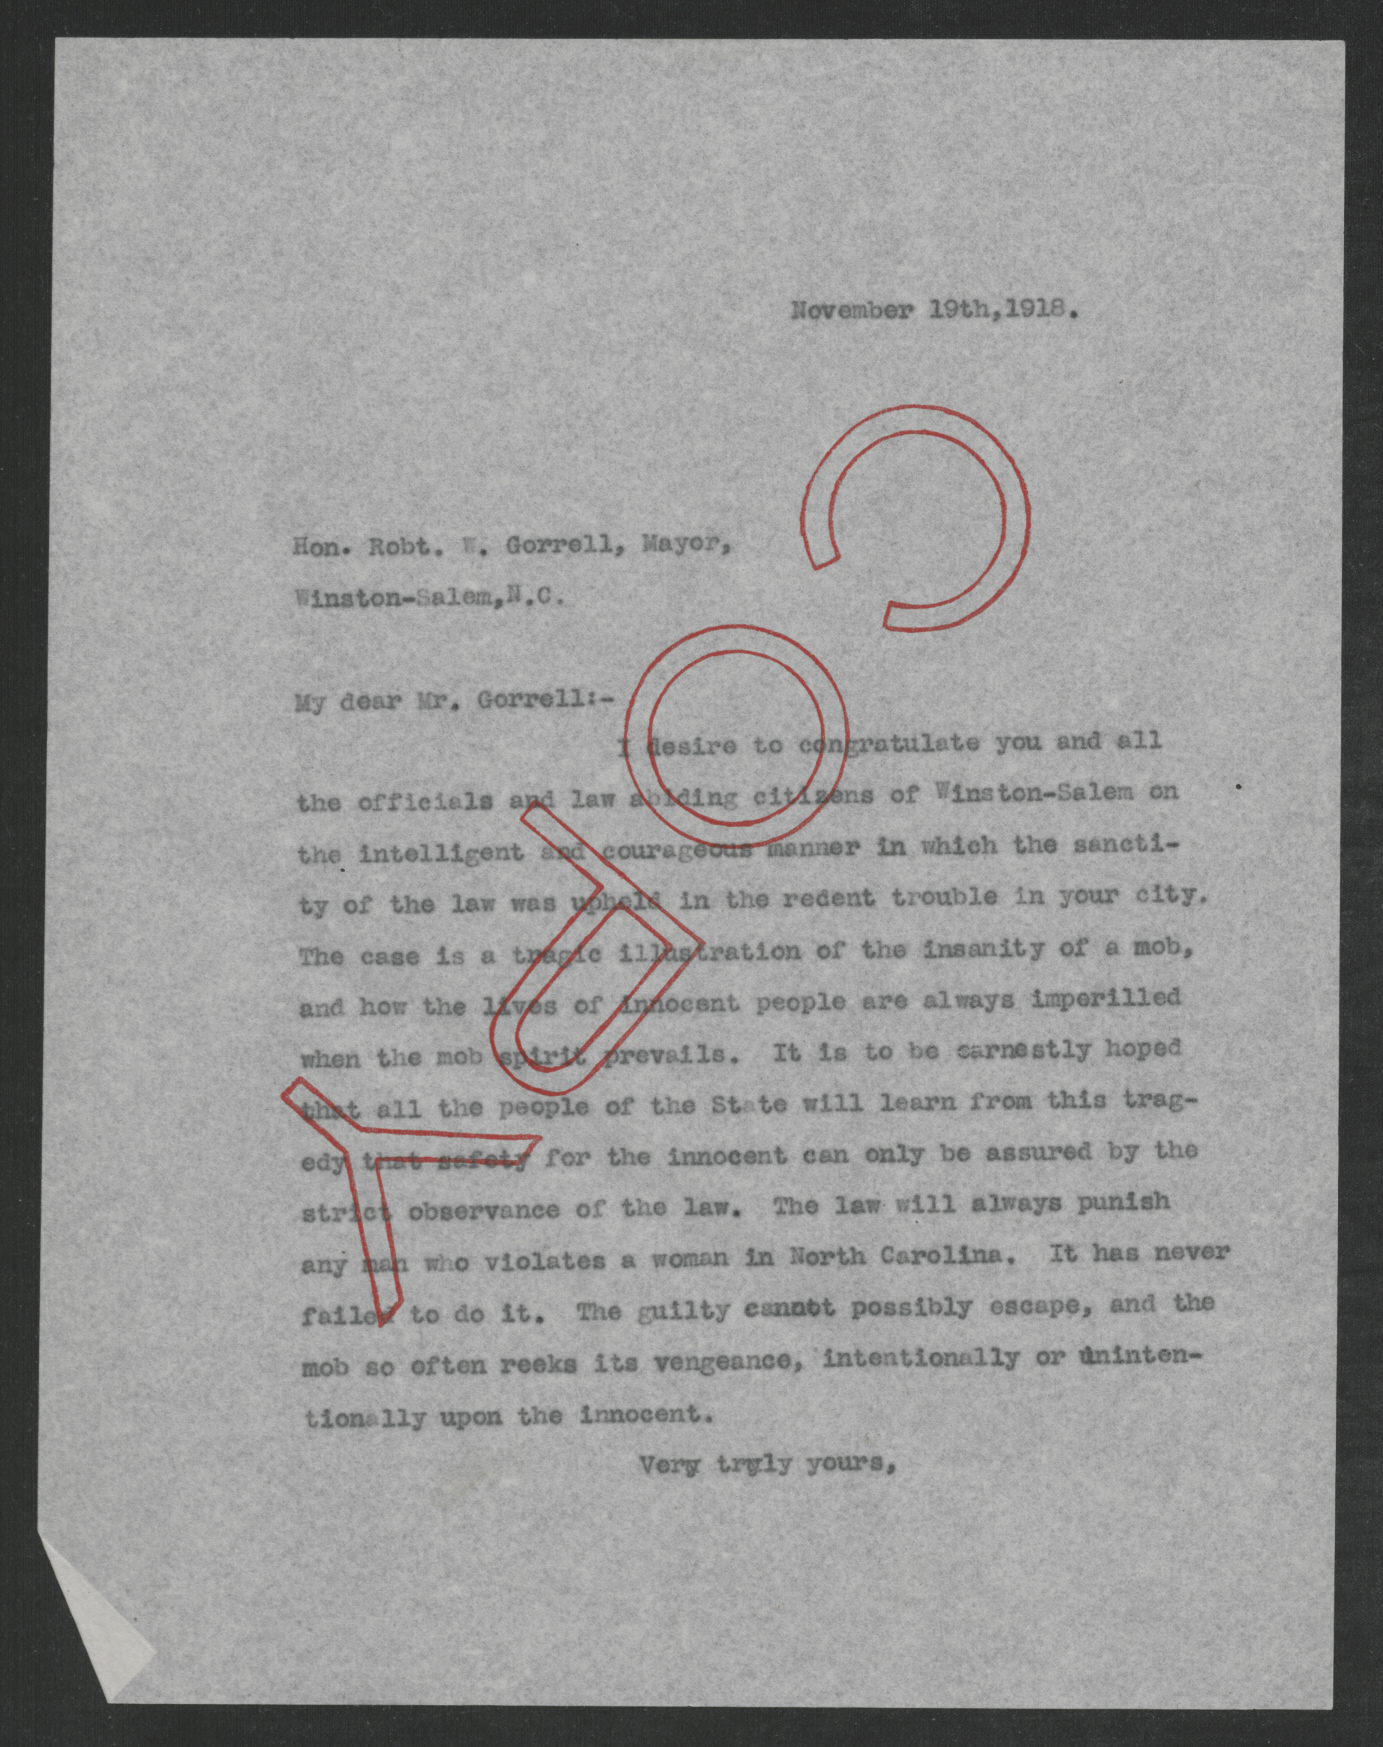 Letter from Gov. Bickett to Robert W. Gorrell, November 19, 1918